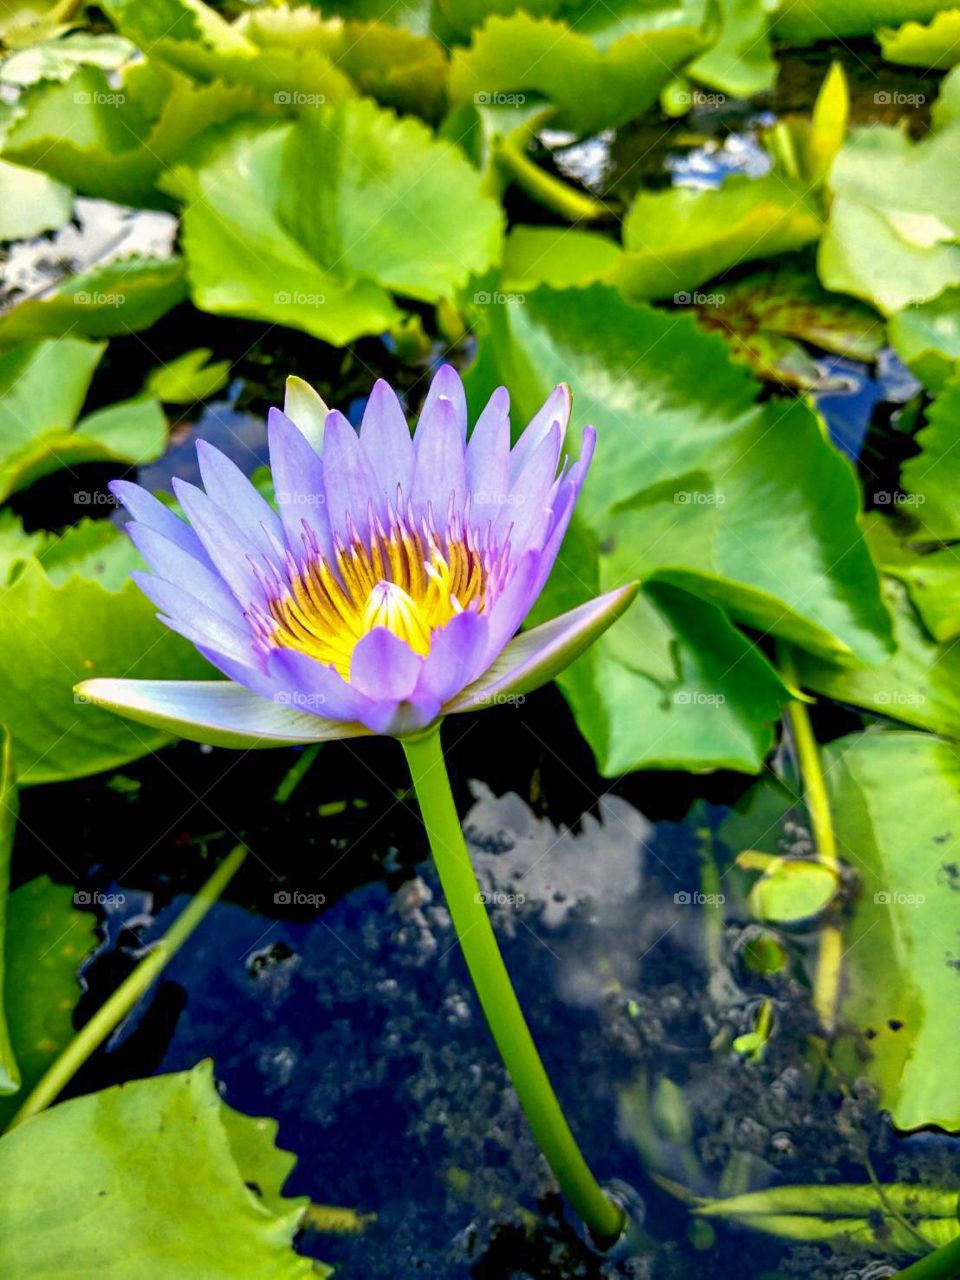 blue lotus flower in the pool.